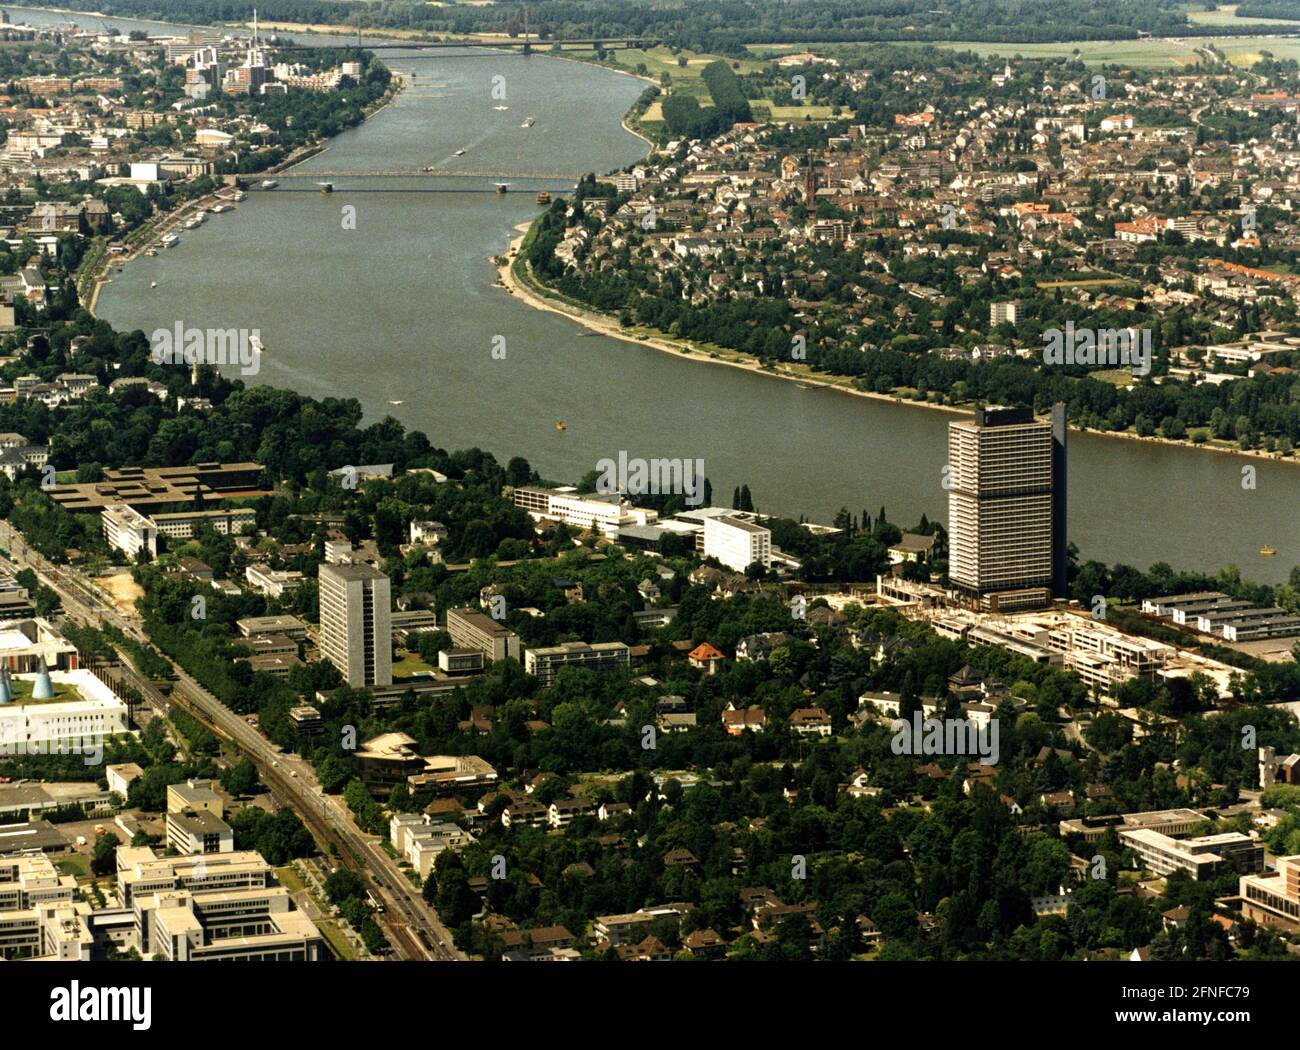 'Sur la vue aérienne vous pouvez voir le Rhin, sur lequel certains navires naviguent. Aussi le ''Lange Eugen'', le siège du Parlement du district gouvernemental. Photo non datée, vers 1980. [traduction automatique]' Banque D'Images